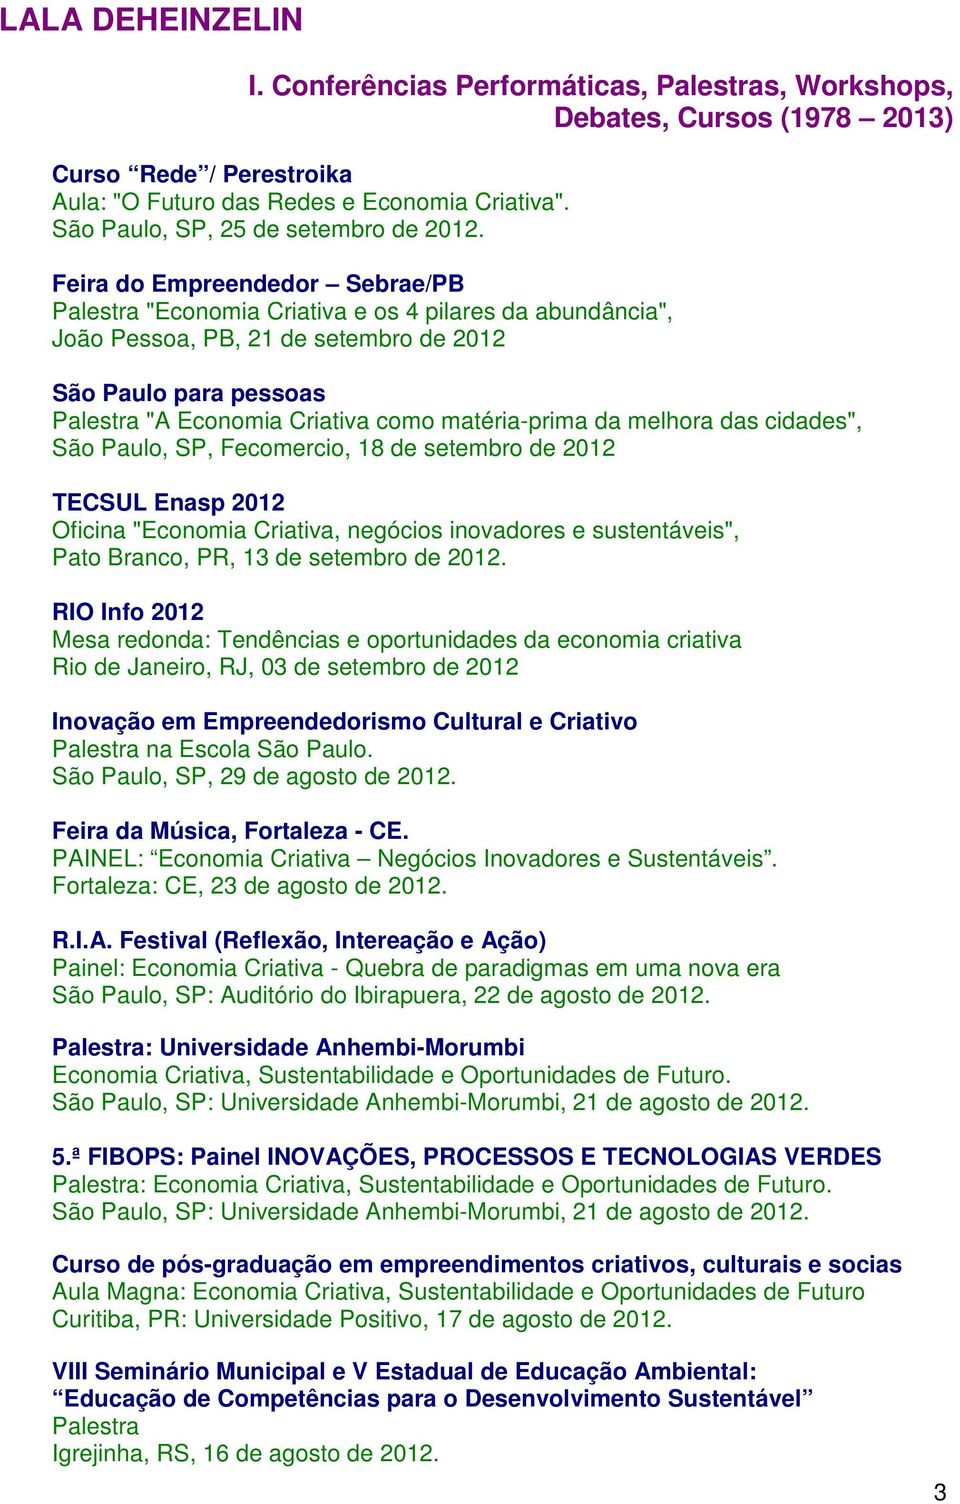 matéria-prima da melhora das cidades", São Paulo, SP, Fecomercio, 18 de setembro de 2012 TECSUL Enasp 2012 Oficina "Economia Criativa, negócios inovadores e sustentáveis", Pato Branco, PR, 13 de